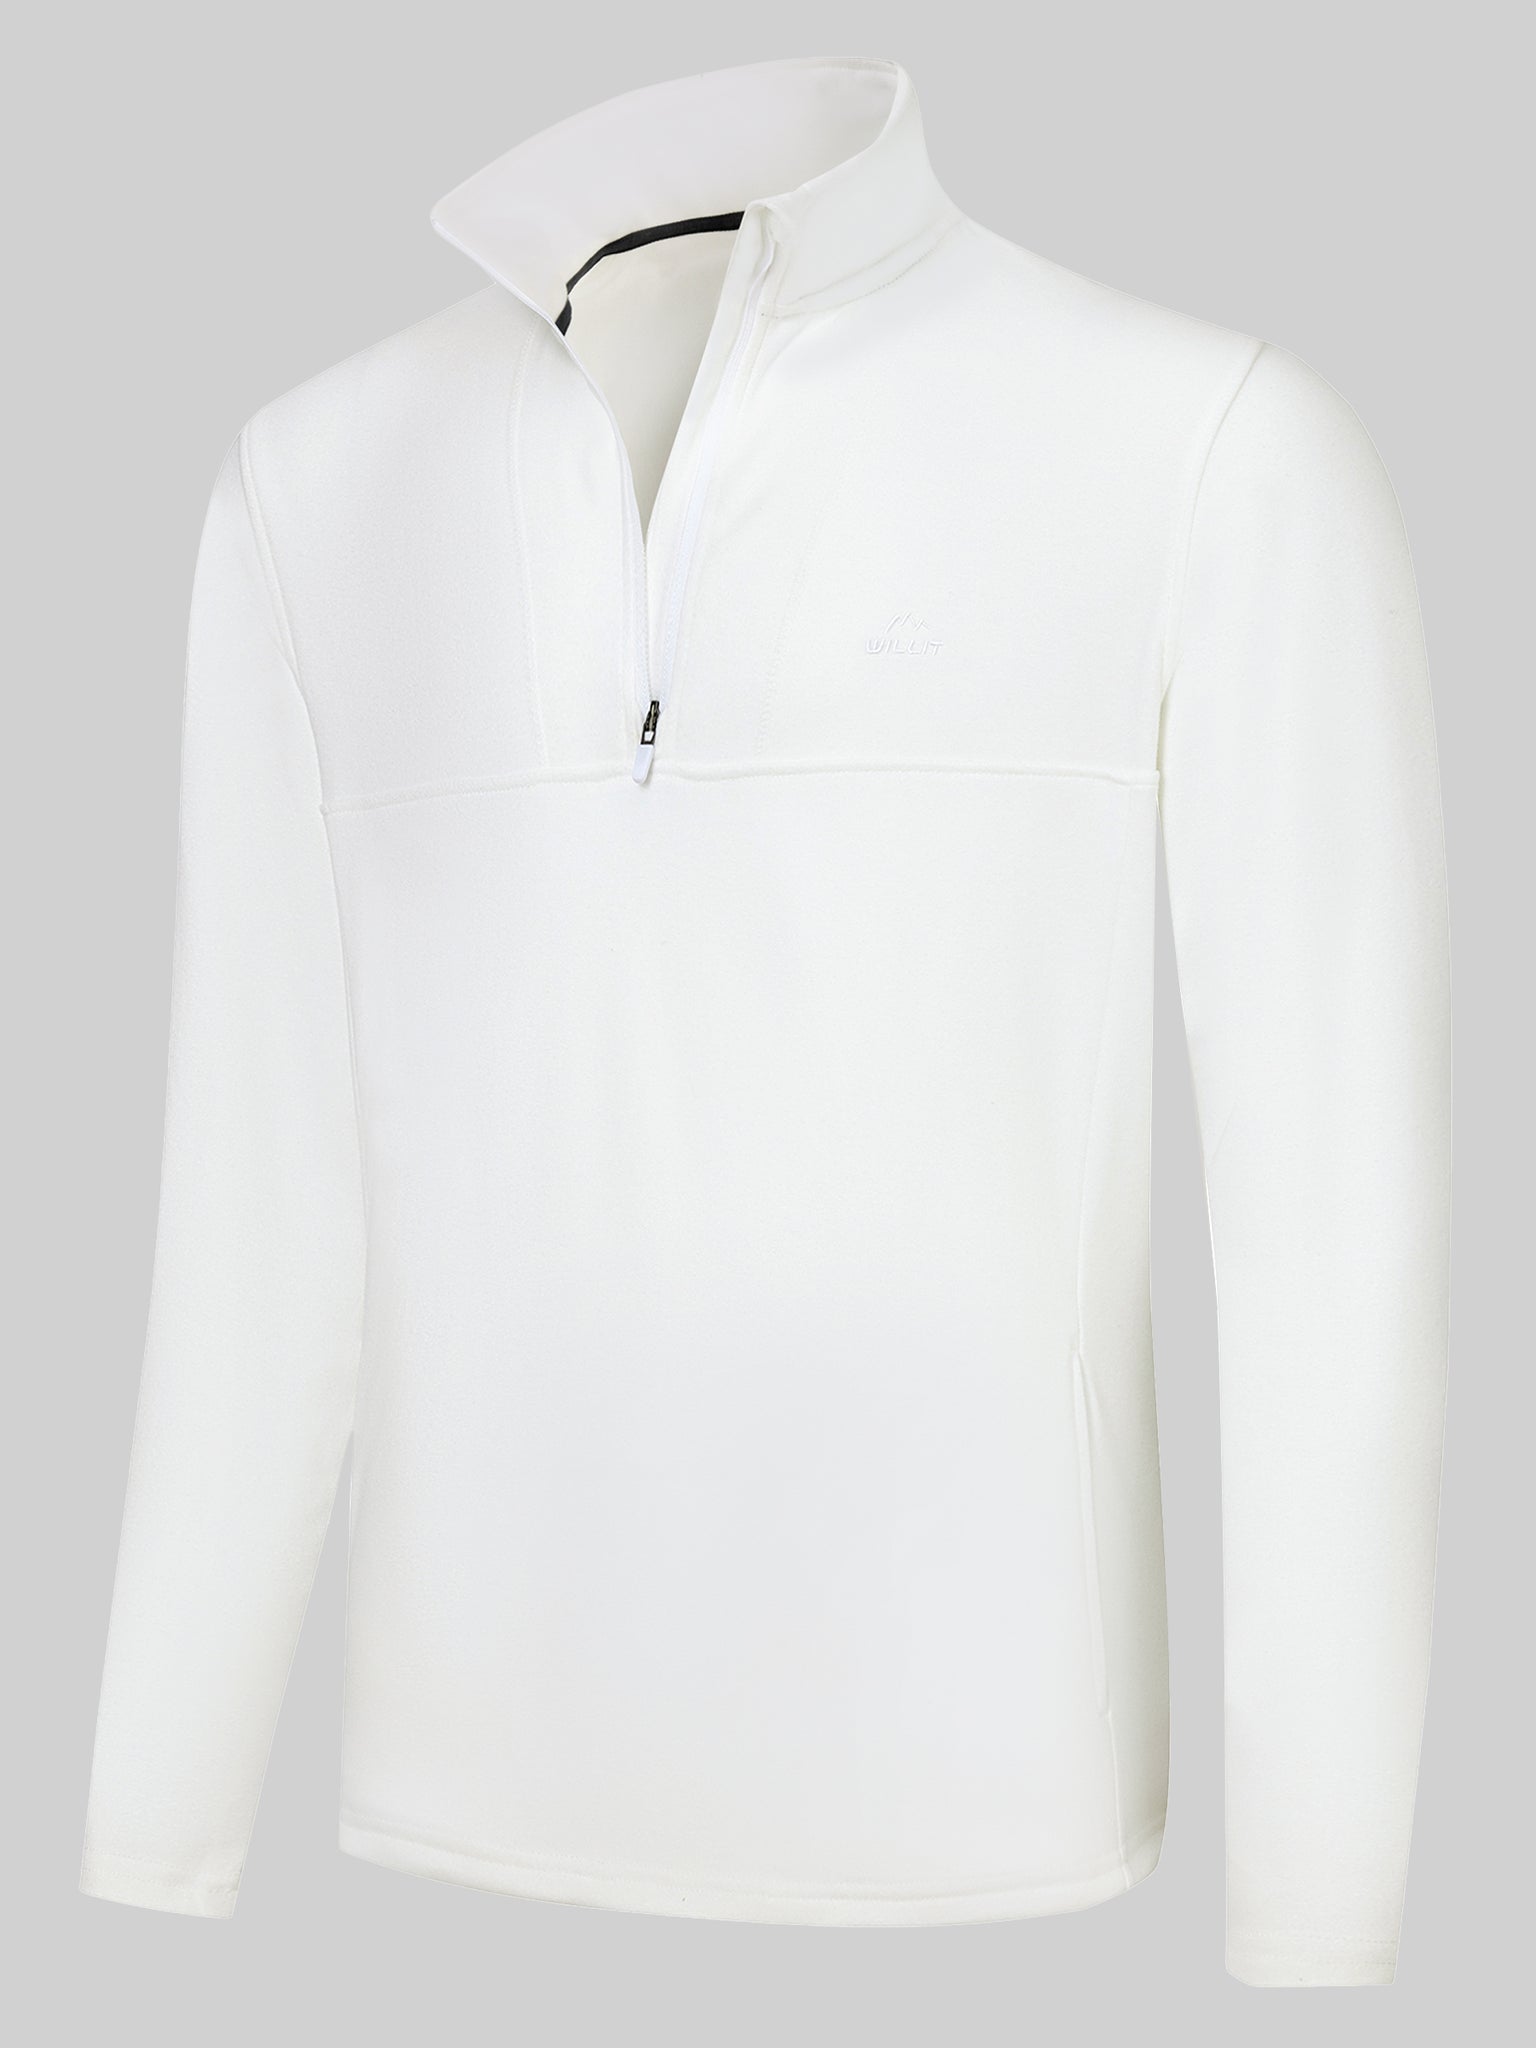 Men's Fleece Quarter Zip Pullover_White_model4